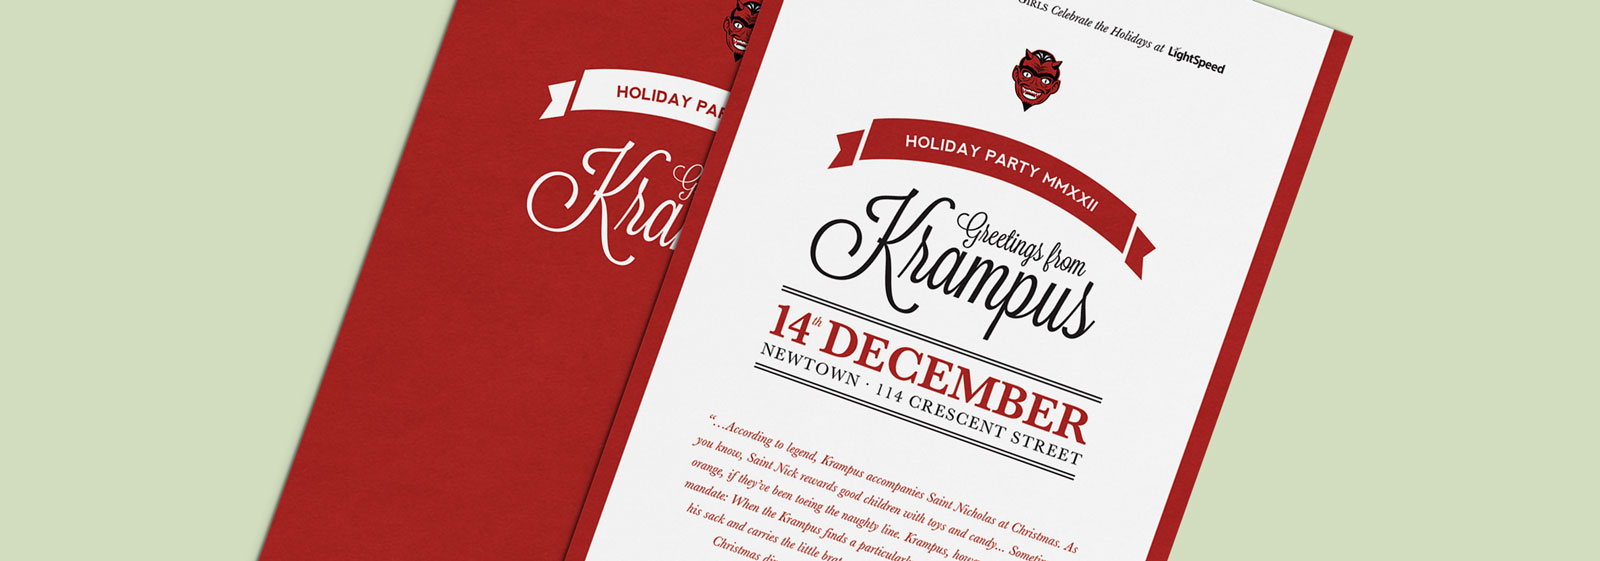 Krampus Holiday Party Invitation Design